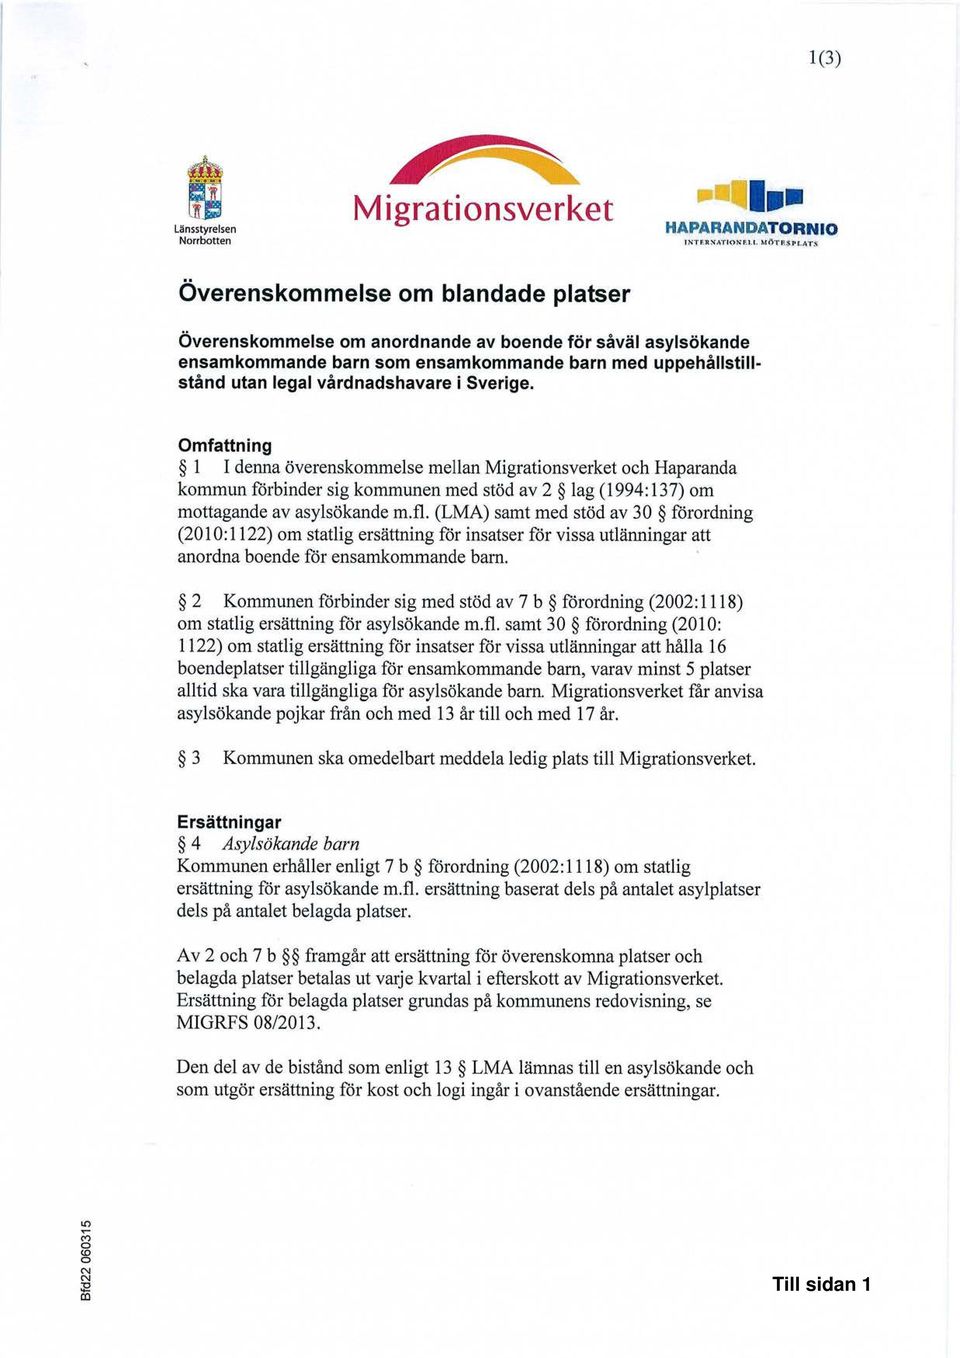 Sverige. Omfattning 1 I denna överenskommelse mellan Migrationsverket och Haparanda kommun förbinder sig kommunen med stöd av 2 lag (1994:137) om mottagande av asylsökande m.fl.